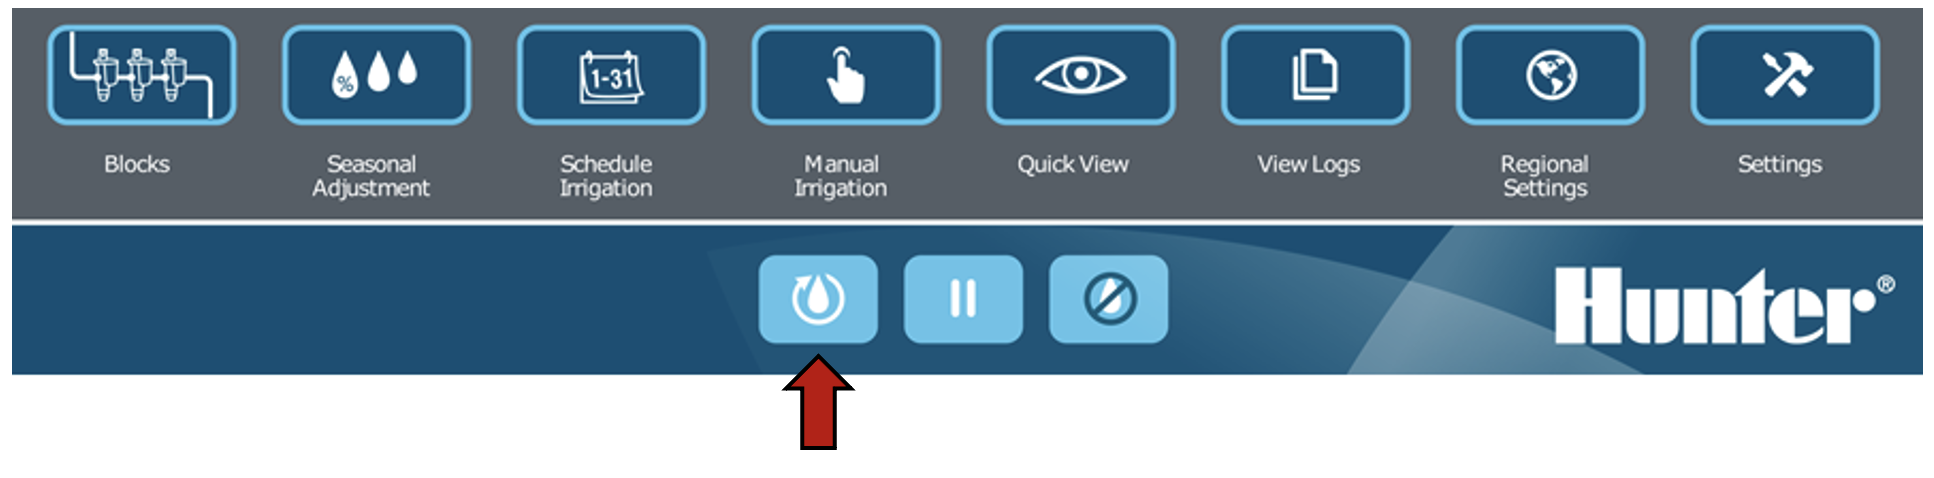 Image de l'interface mettant en évidence le bouton pour reprendre.